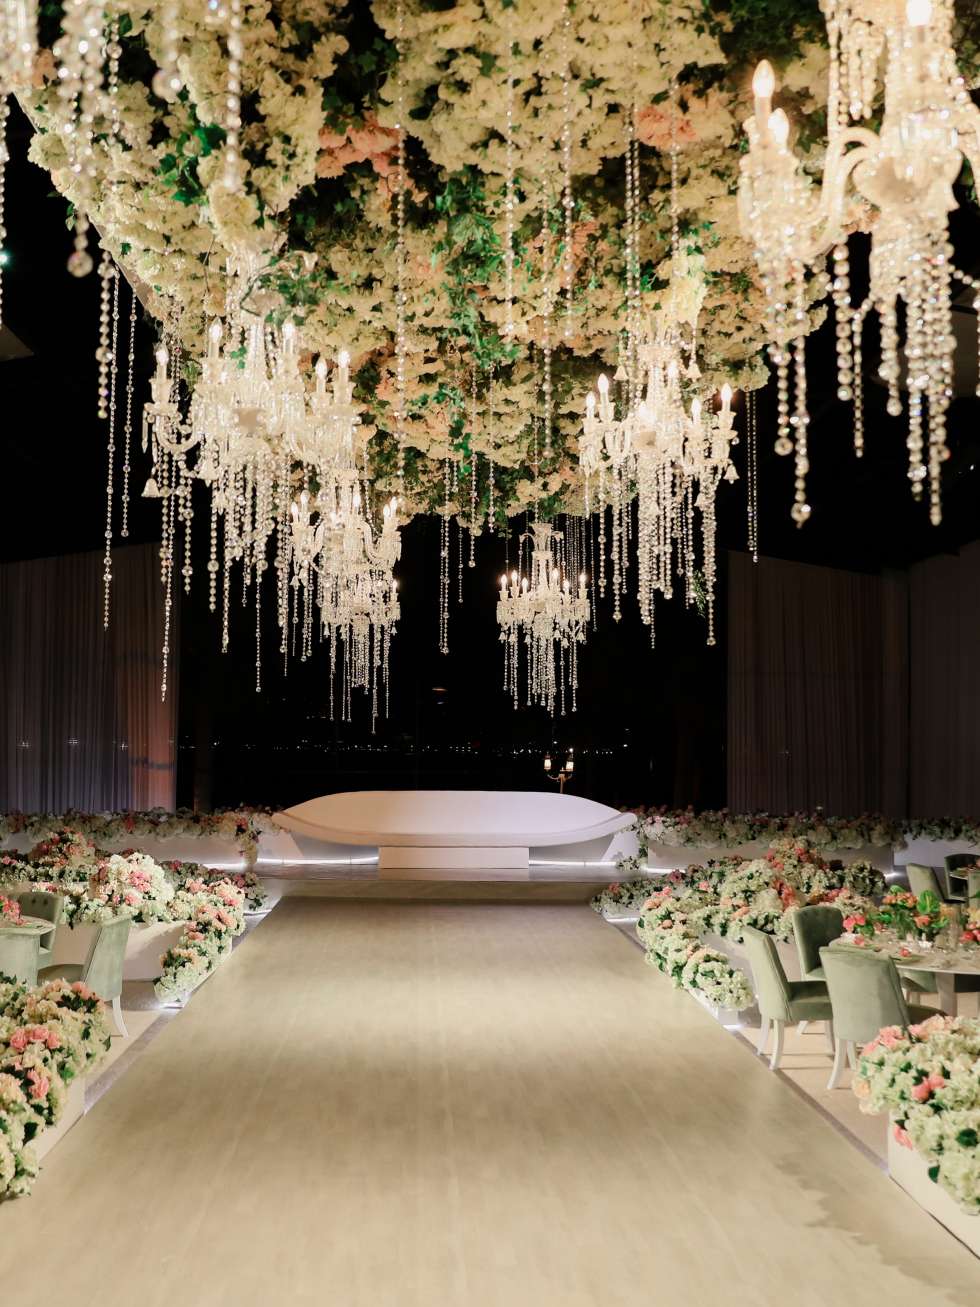 حفل زفاف ملكي مزين بالزهور في قطر